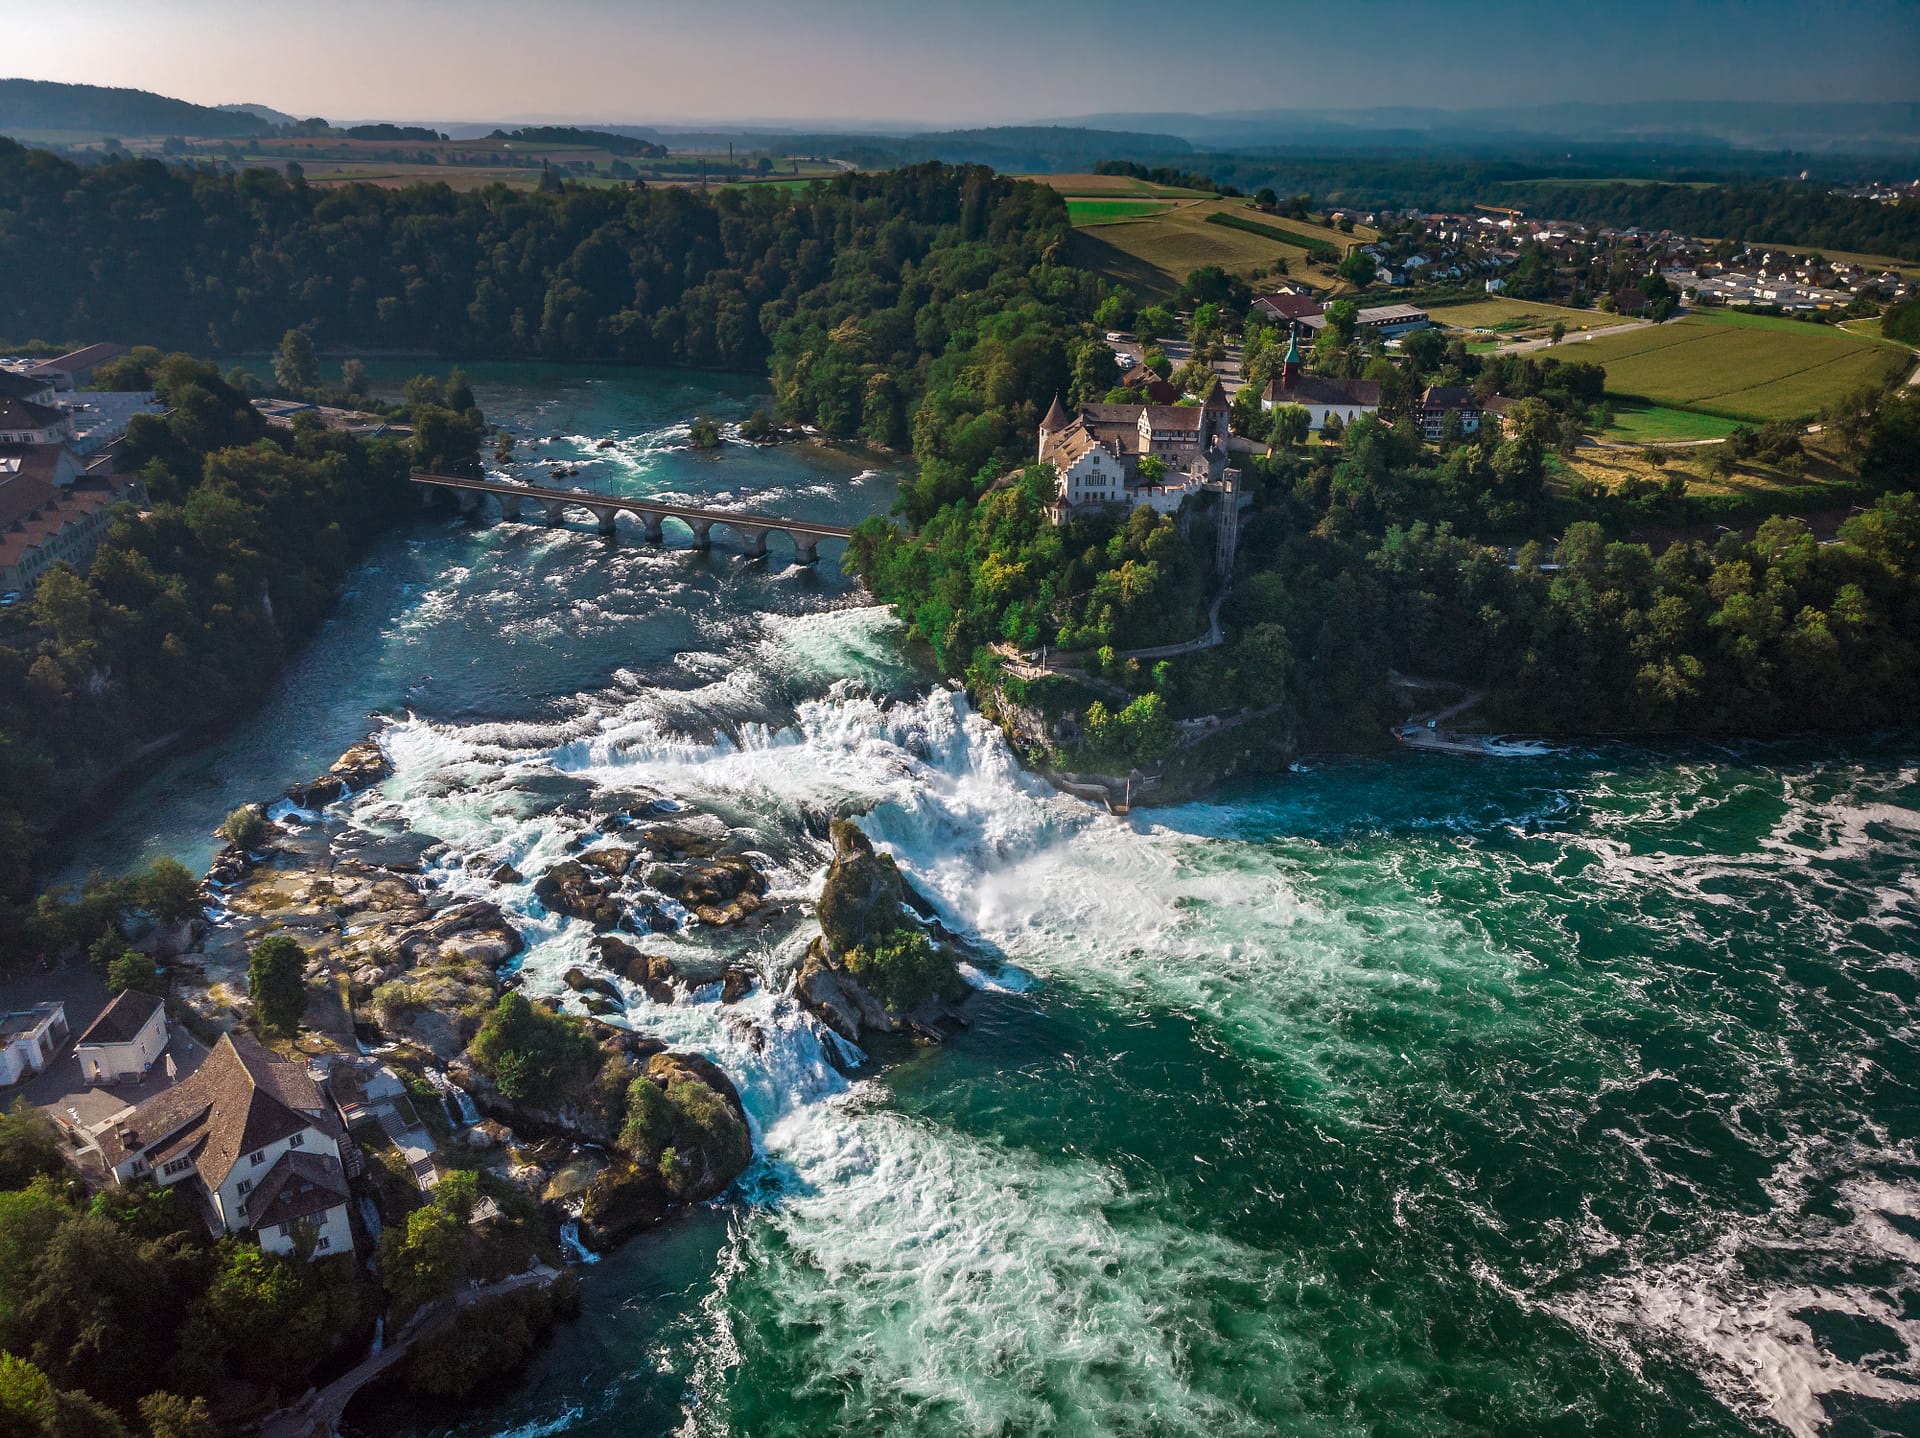 Rhine Falls (Rheinfall) waterfalls with Schloss Laufen castle, Neuhausen near Schaffhausen, Canton Schaffhausen, Switzerland, Europe